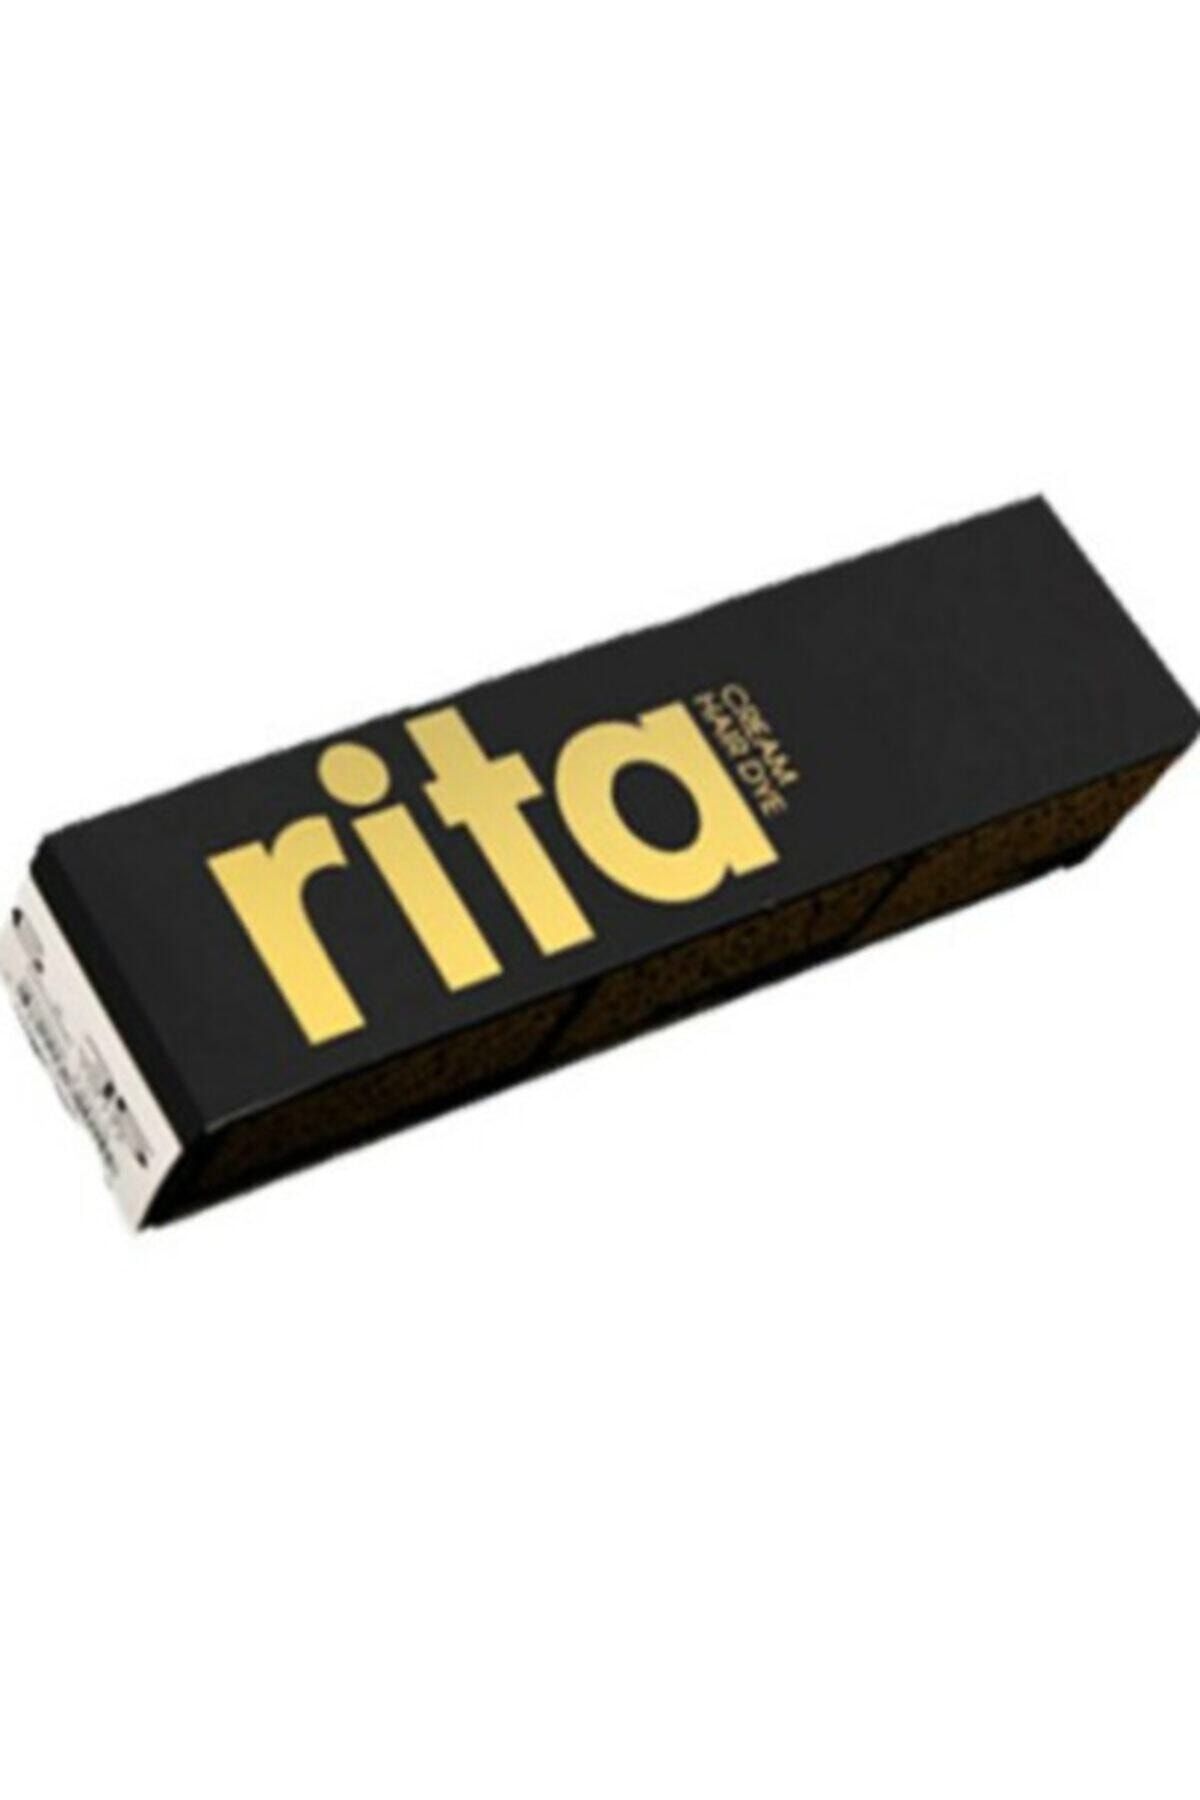 Rita 5.7 - Bitter Çikolata Krem Saç Boyası